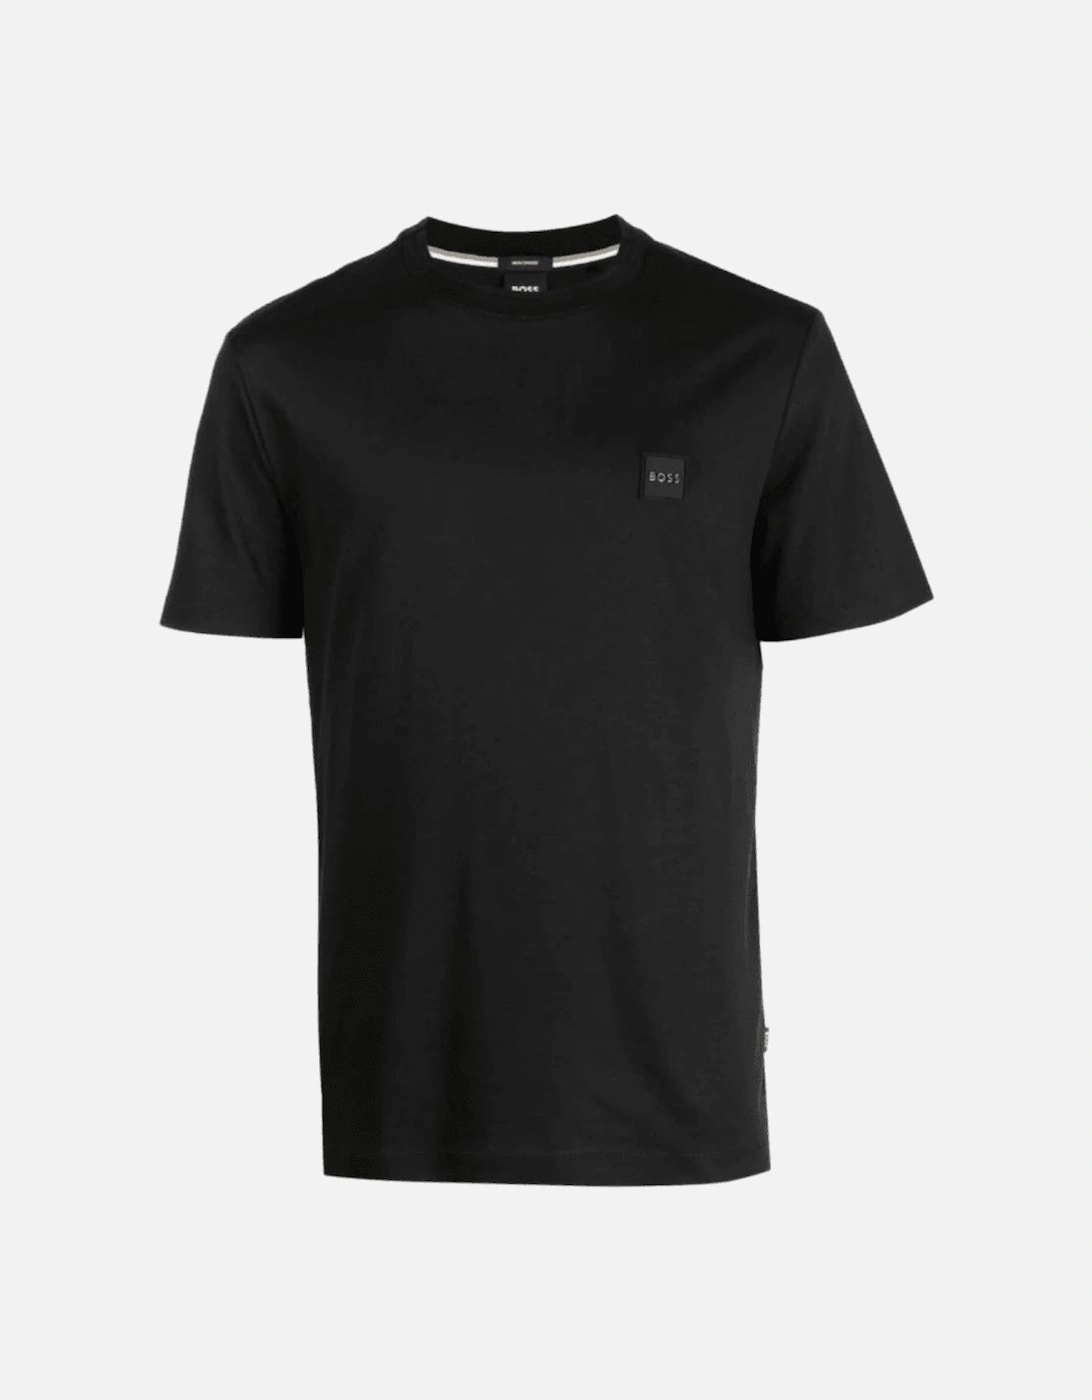 Tilburt 278 Cotton Rubberised Logo Black T-Shirt, 4 of 3